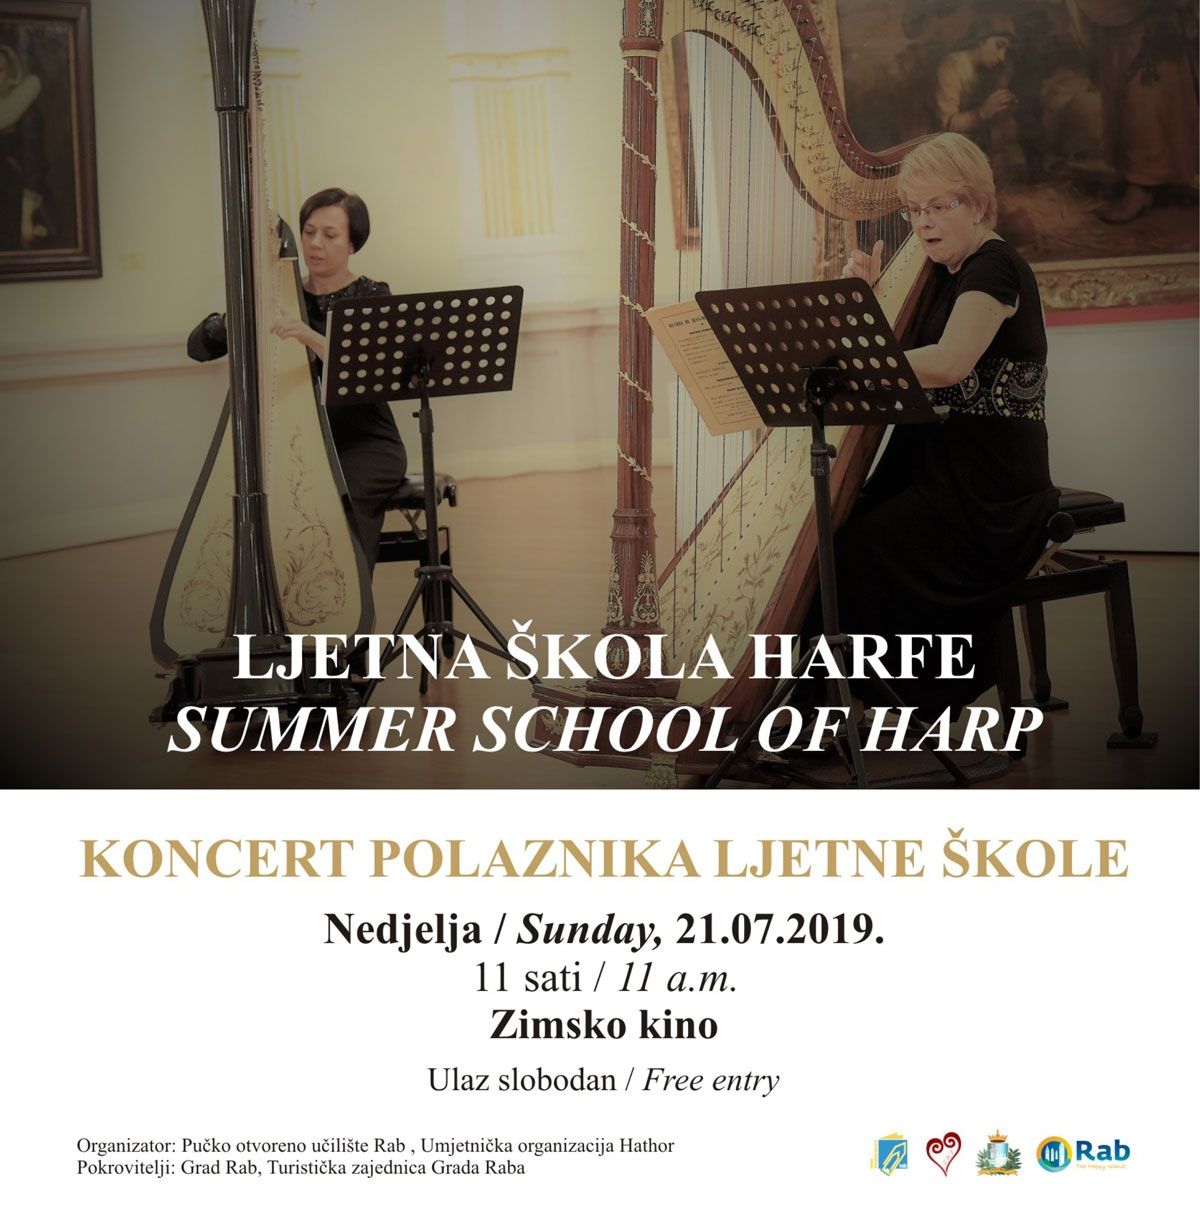 Završni koncert polaznika Međunarodne ljetne škole harfe na Rabu / (ned.) 21.7. u 11h – Zimsko kino Rab